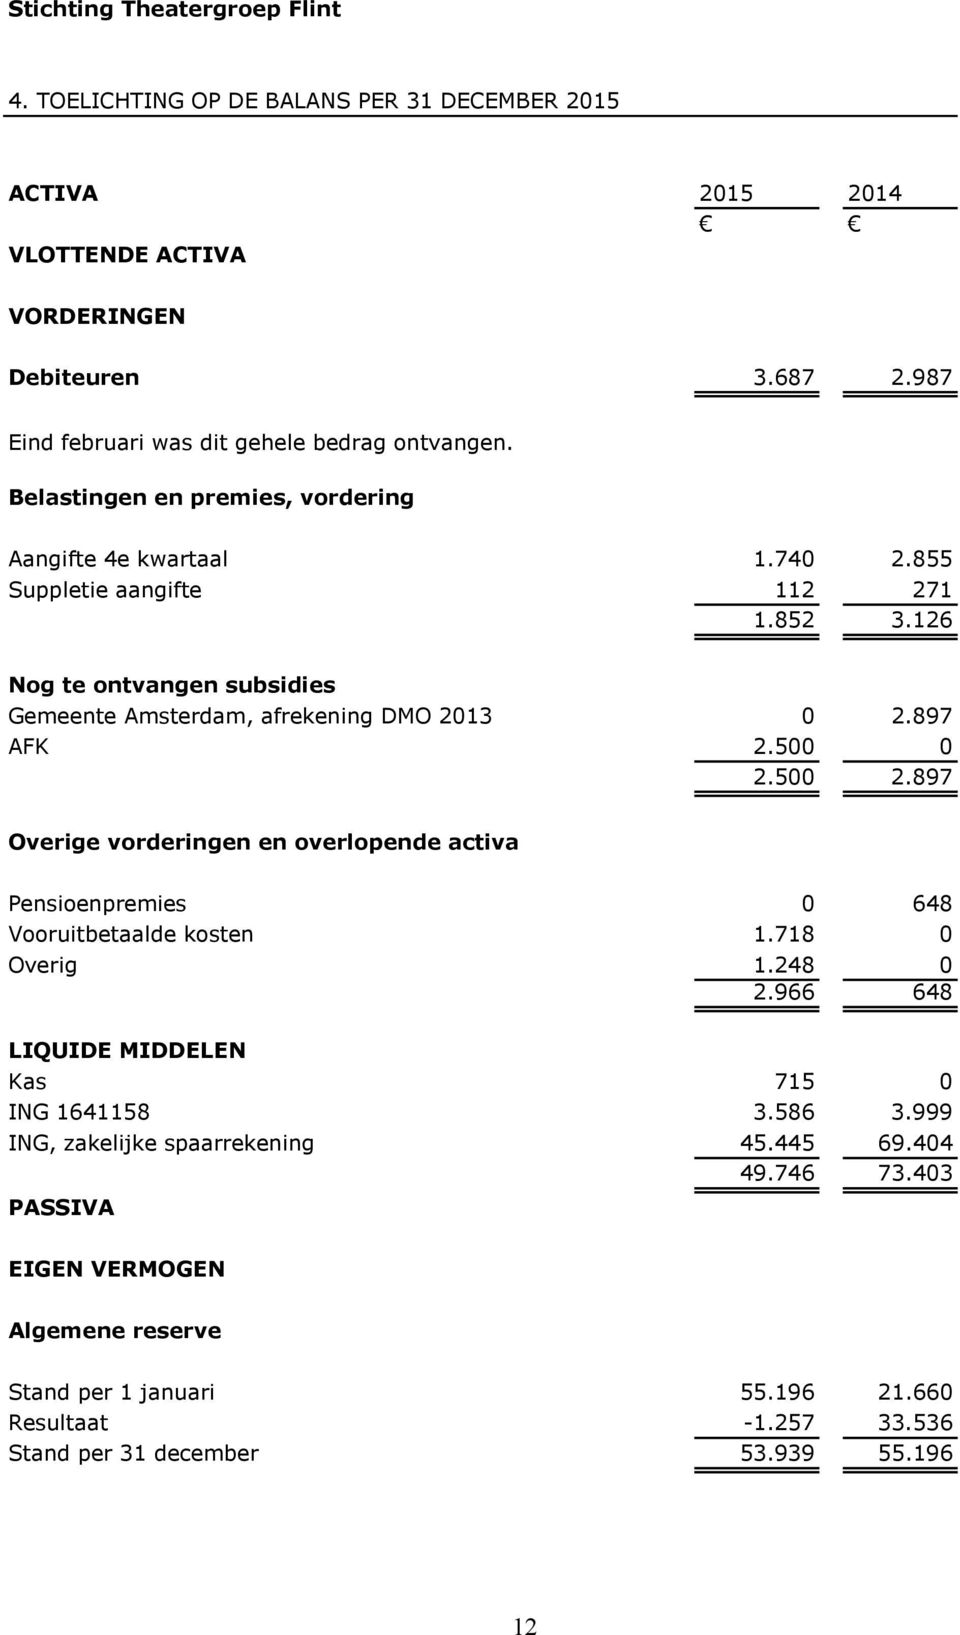 126 Nog te ontvangen subsidies Gemeente Amsterdam, afrekening DMO 2013 0 2.897 AFK 2.500 0 2.500 2.